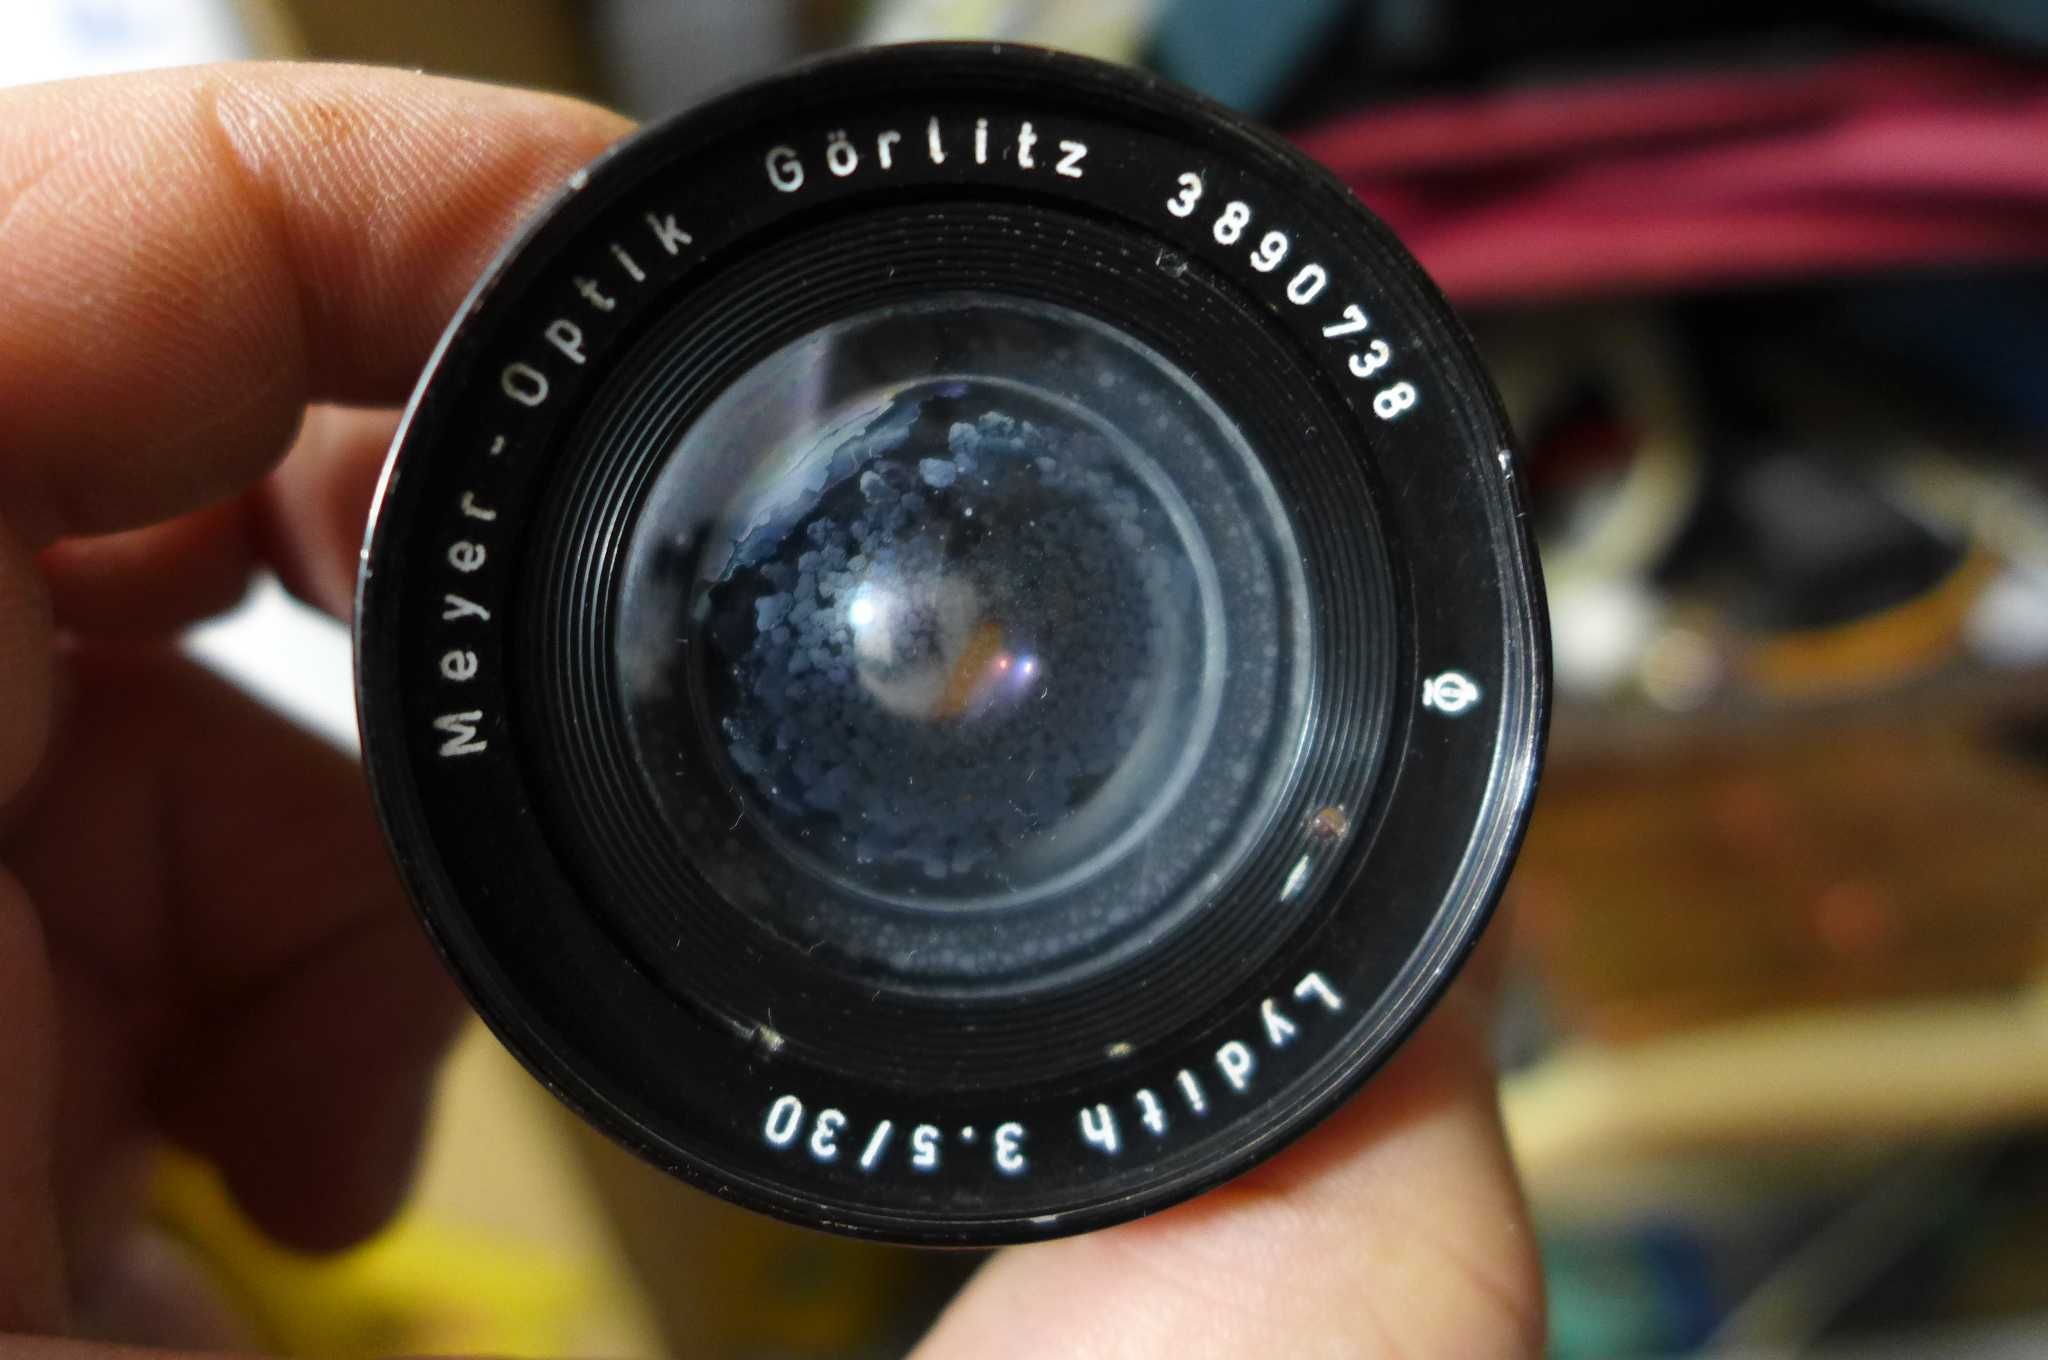 Obiectiv Meyer-Optik Gorlitz Lydith 30mm f/3.5 Lens Exakta mount